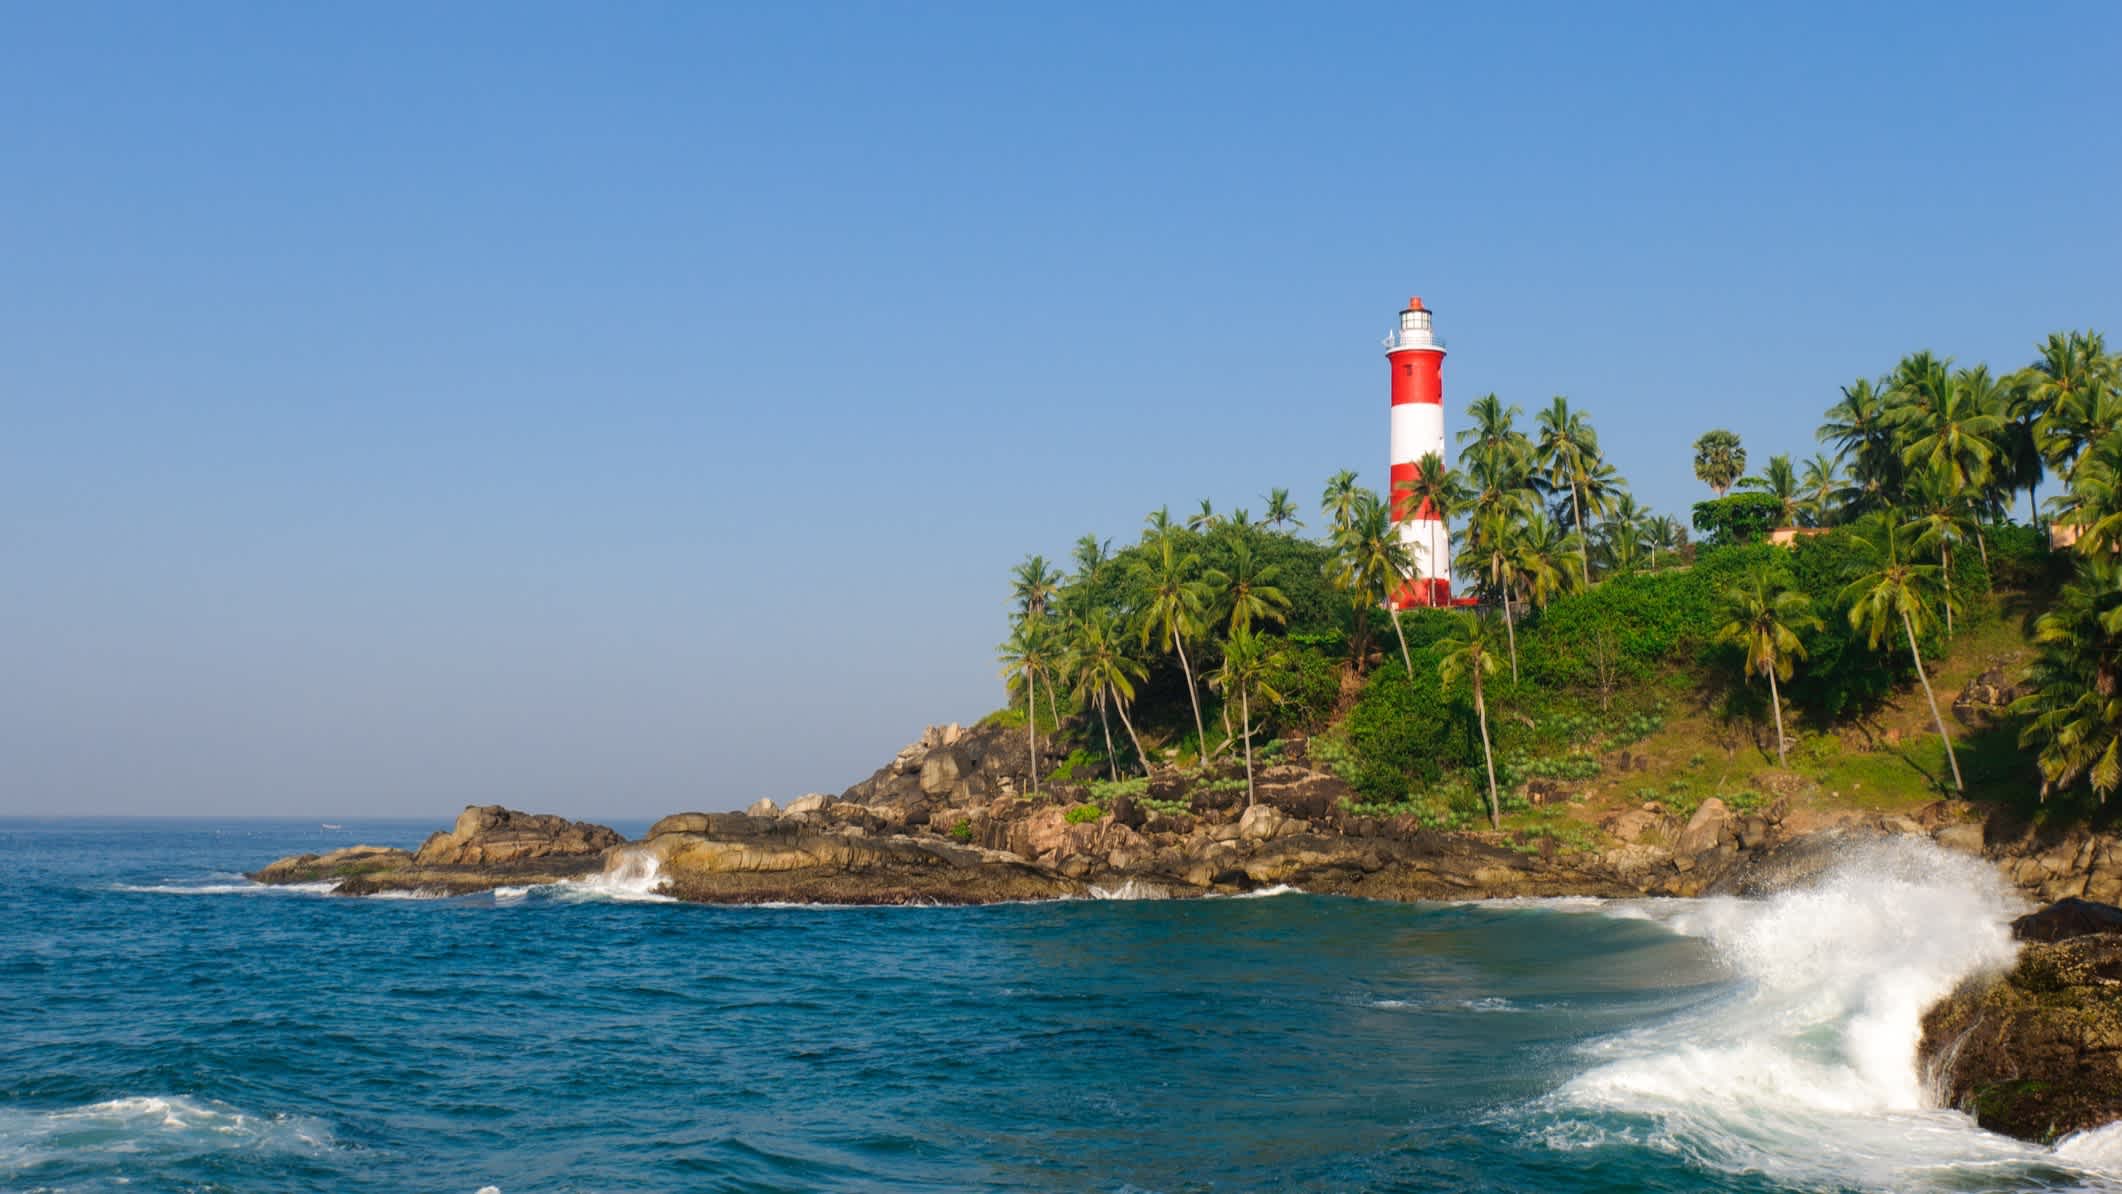 Lighthouse Beach mit dem berühmten Leuchtturm am Meer und Palmen sowie dem schroffen Meer.